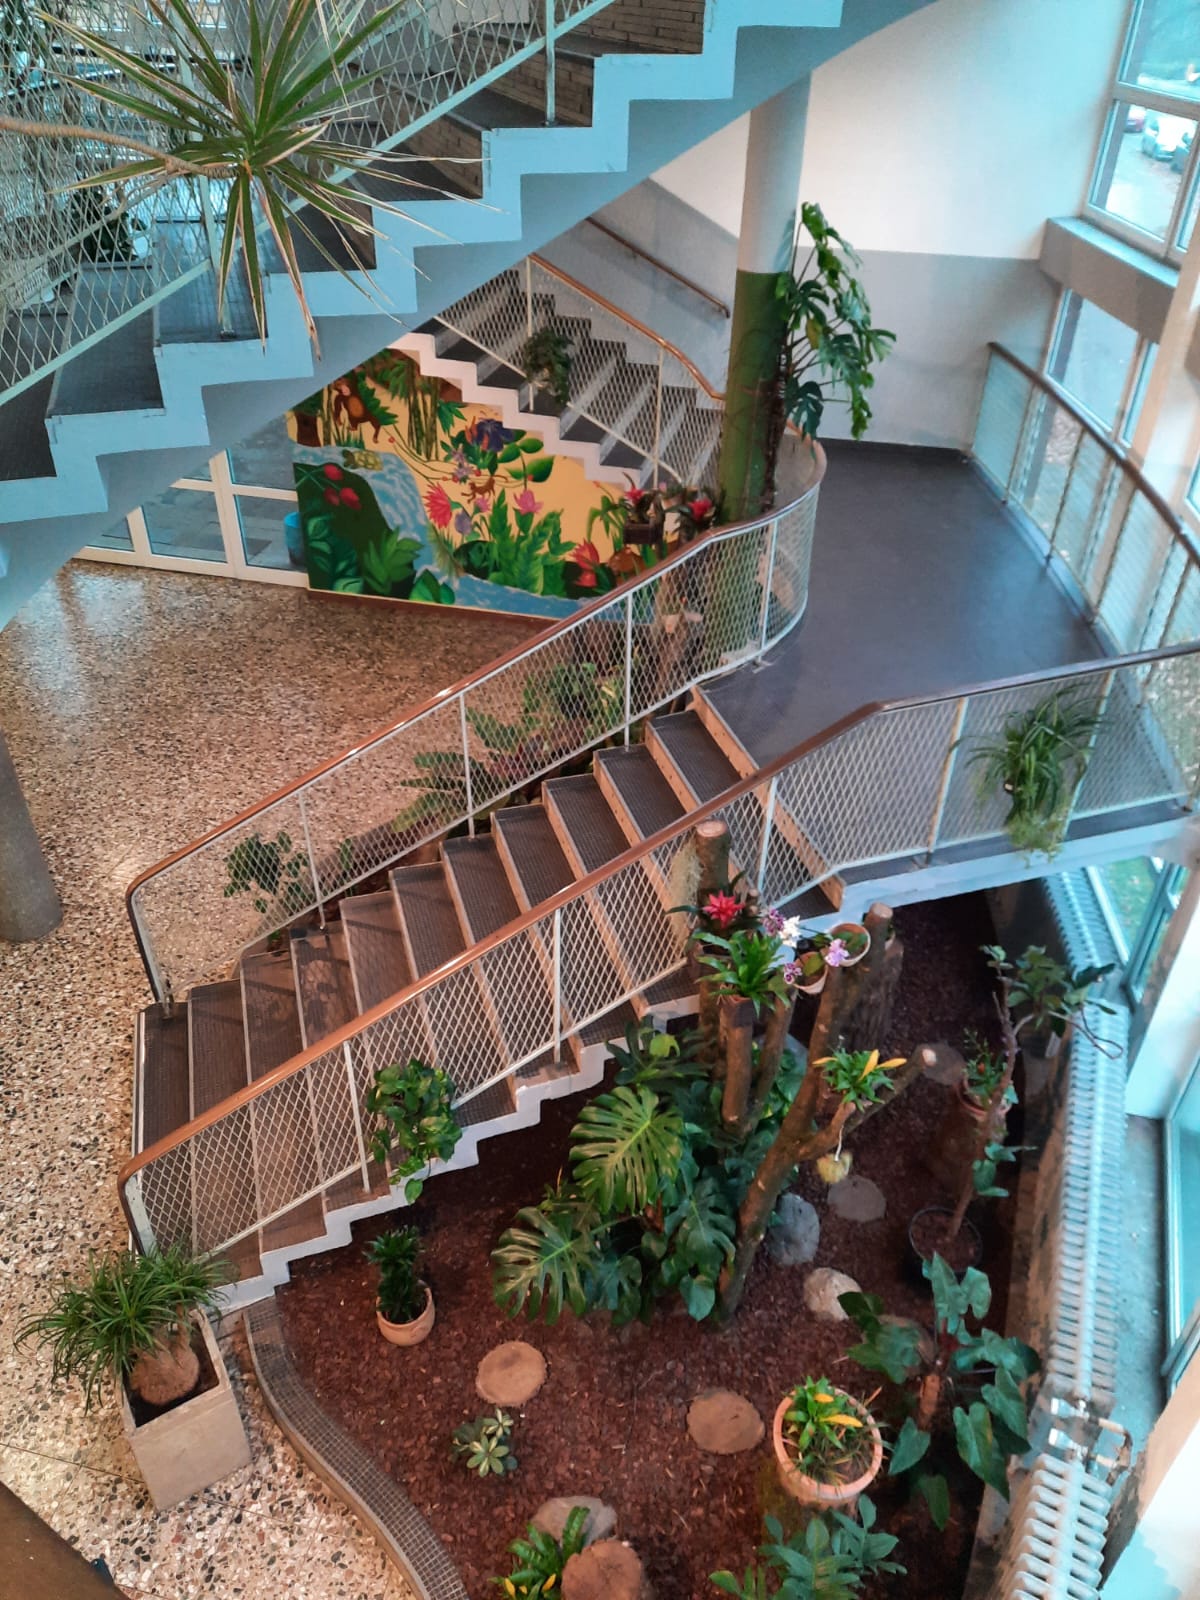 Gesamtbild des tropischen Eingangsbereichs mit Bromelien, Orchideen, Tillantien, kombiniert mit Grünpflanzen und Baumstämmen